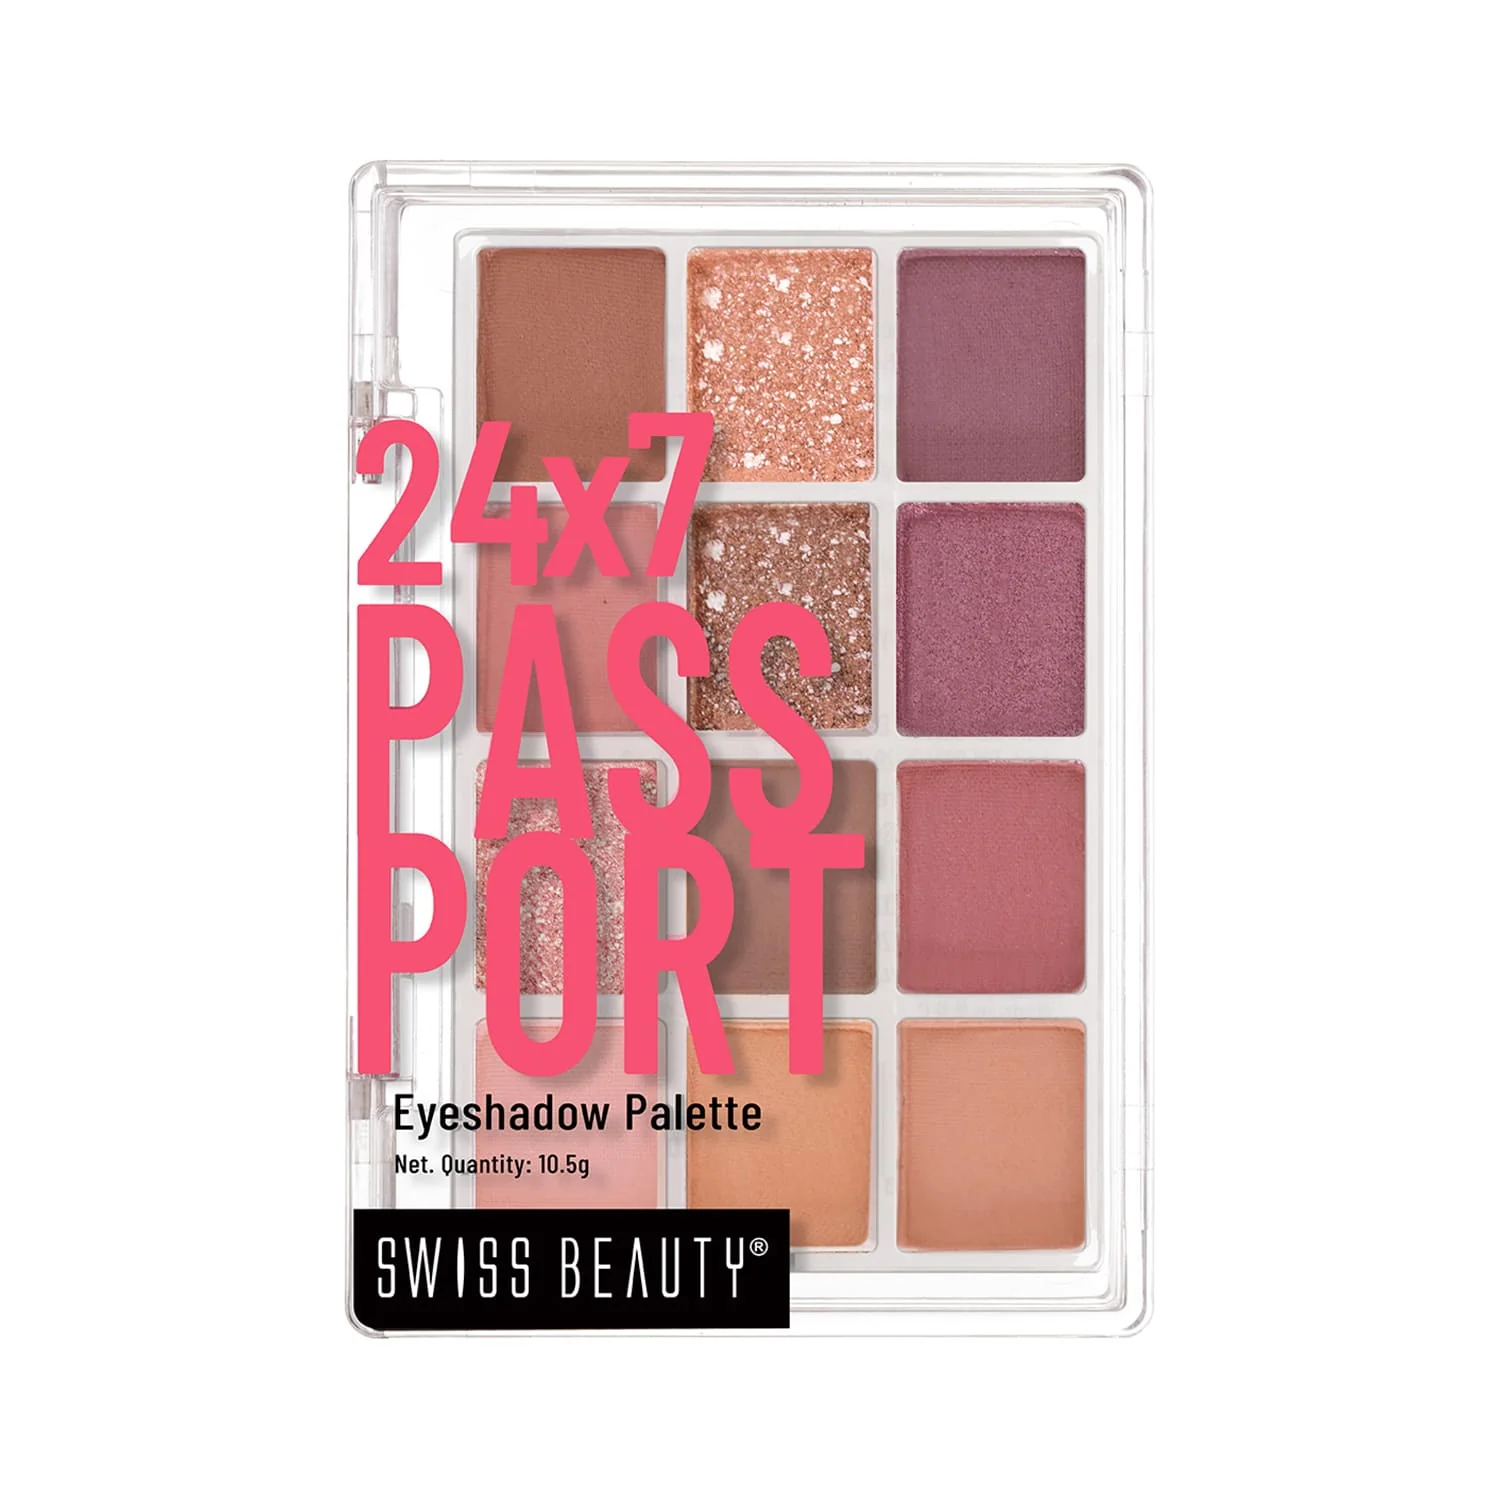 Swiss beauty 24/7 passport eyeshadow palette